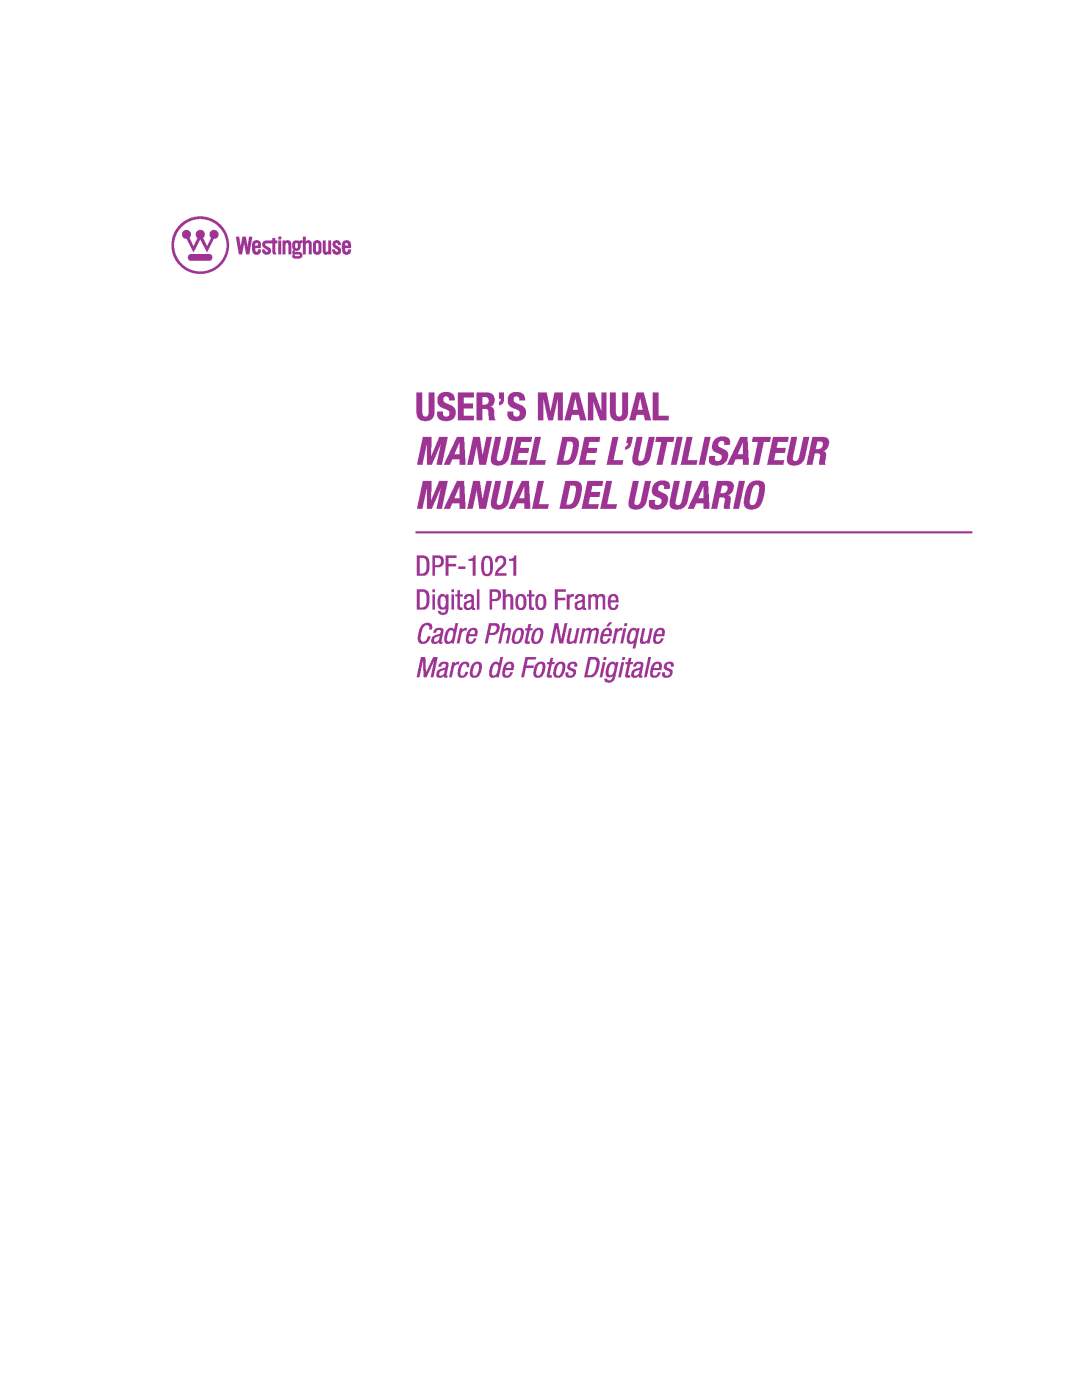 Westinghouse user manual User’S Manual, Manuel De L’Utilisateur Manual Del Usuario, DPF-1021 Digital Photo Frame 